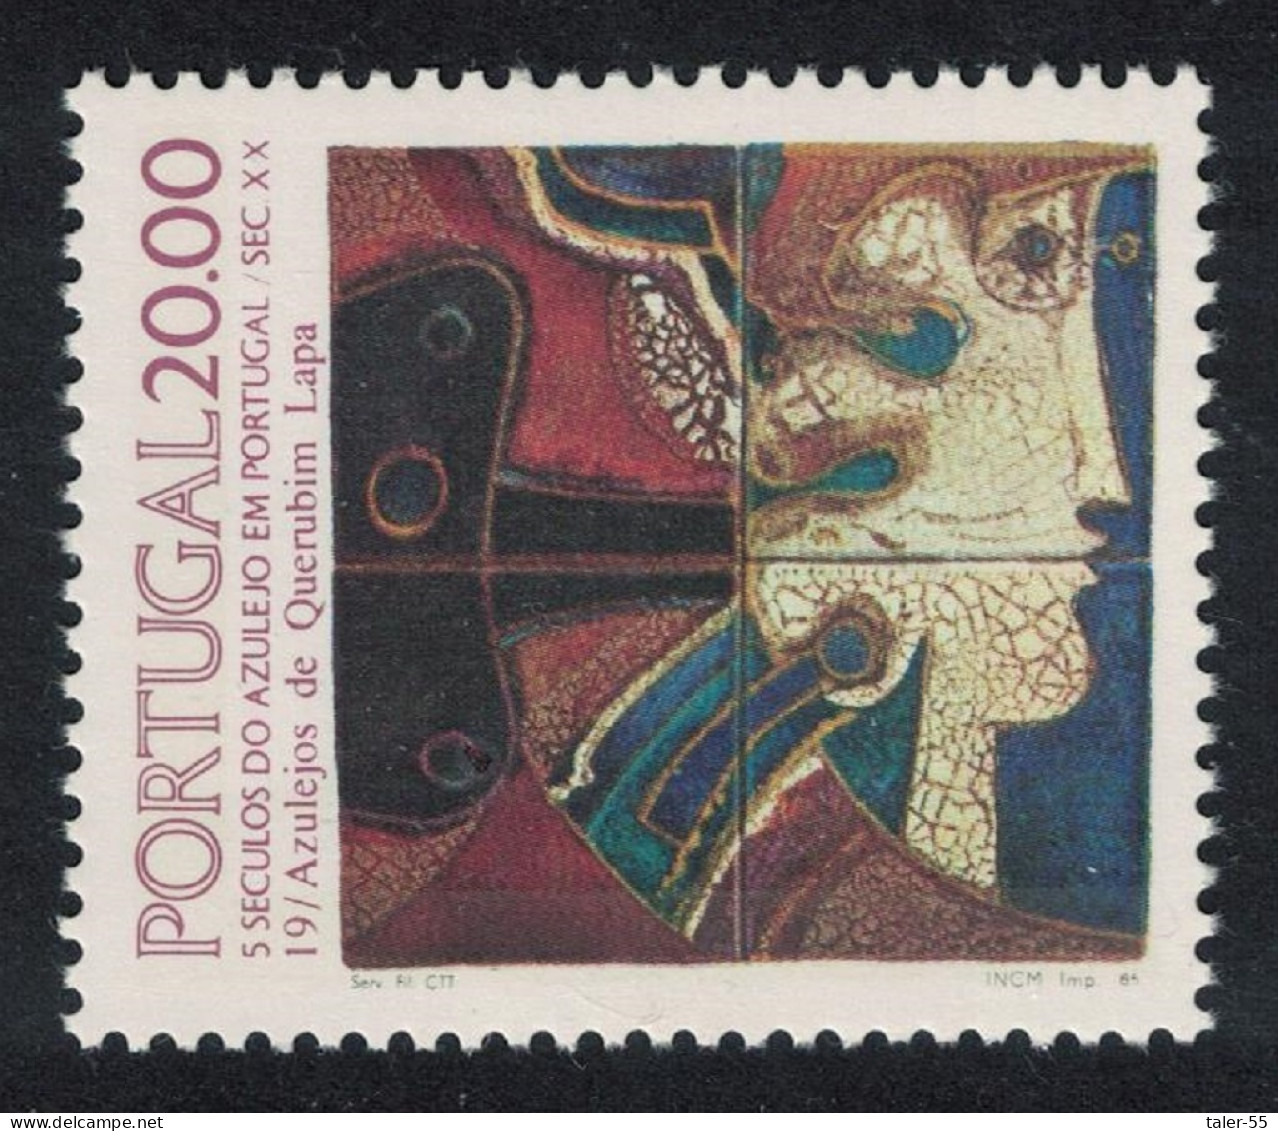 Portugal Tiles 19th Series 1985 MNH SG#2020 - Ungebraucht